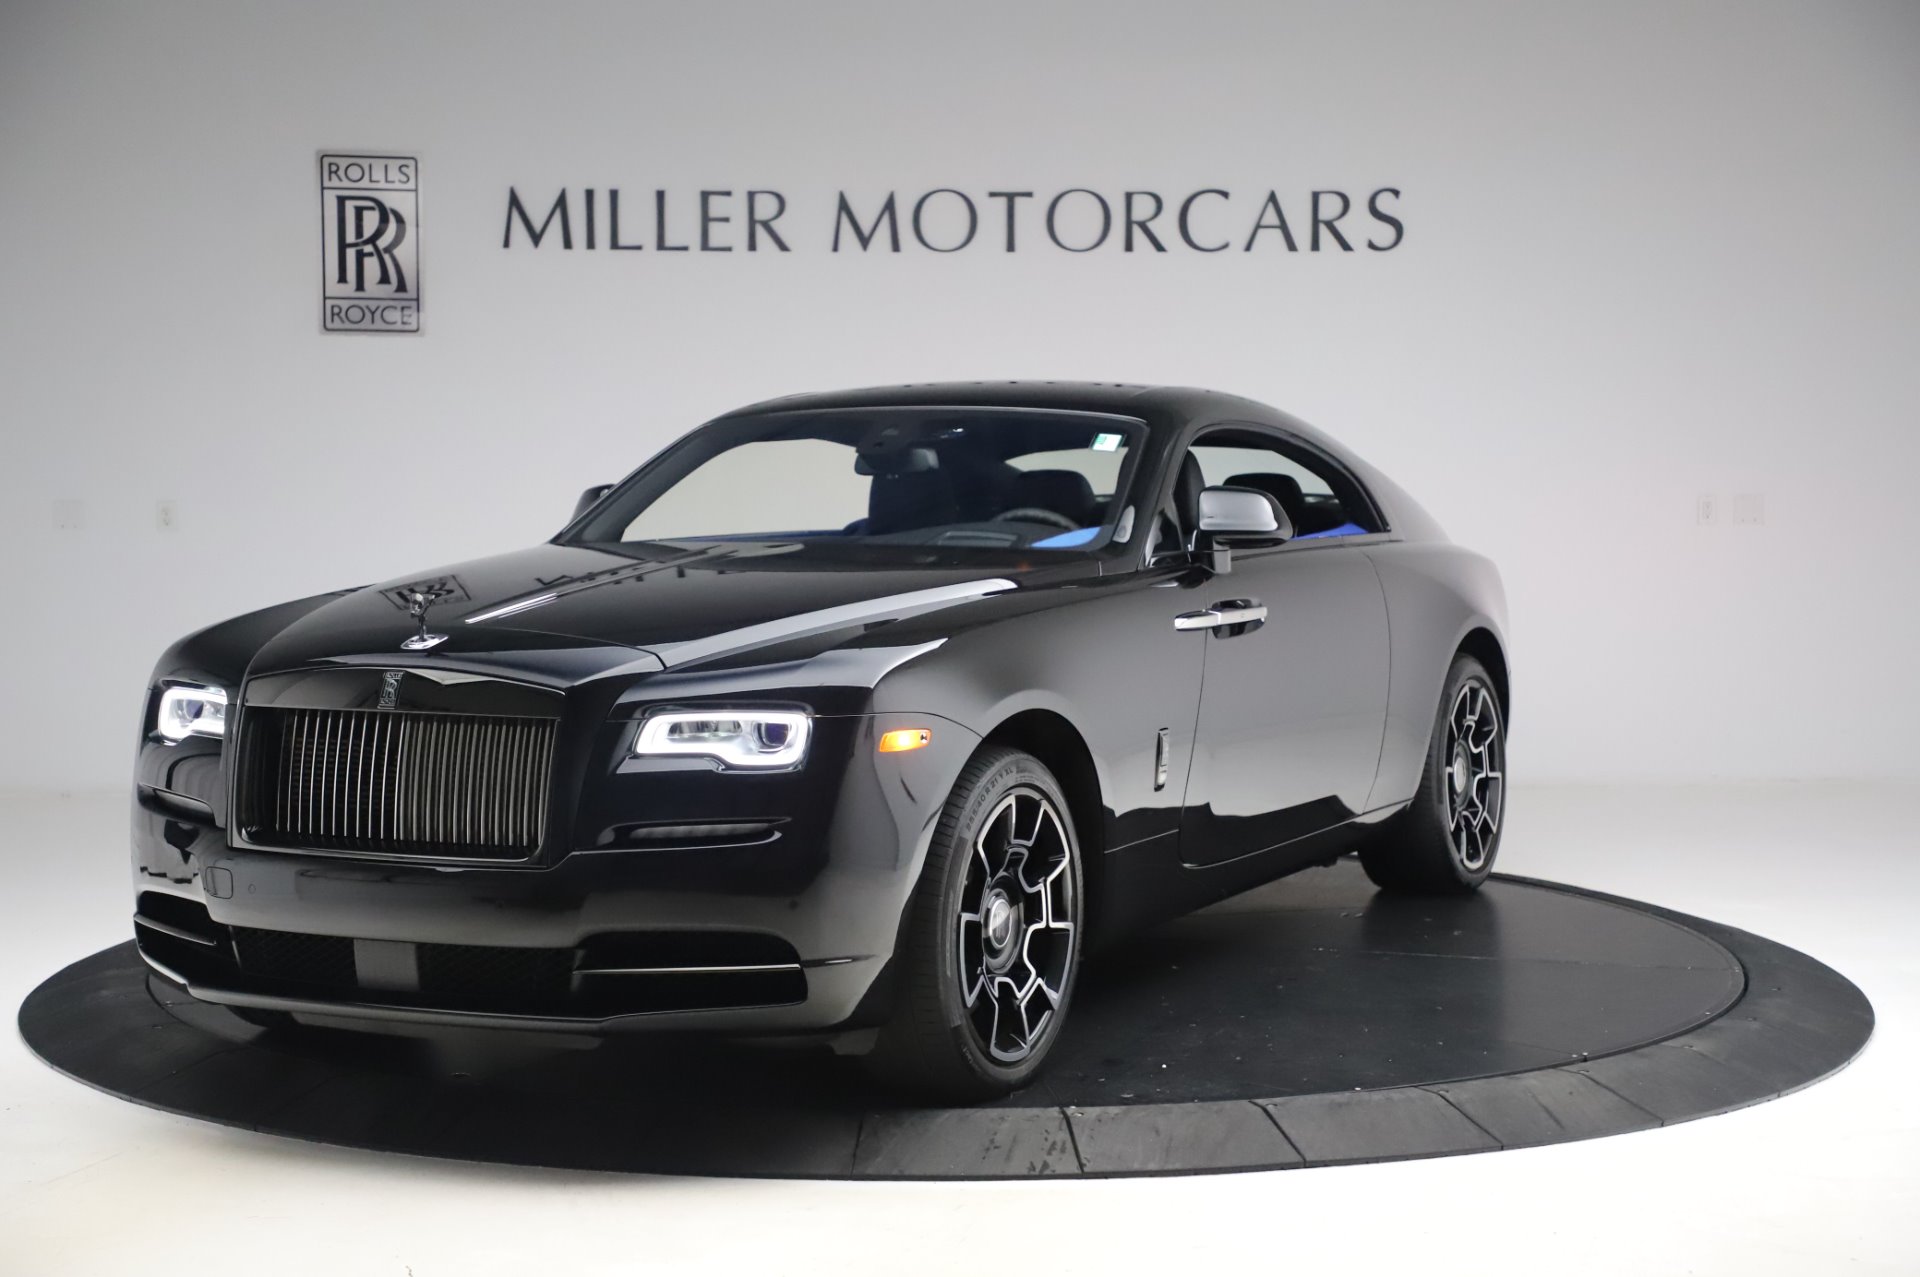 New 2017 Rolls Royce Wraith Black Badge For Sale Miller